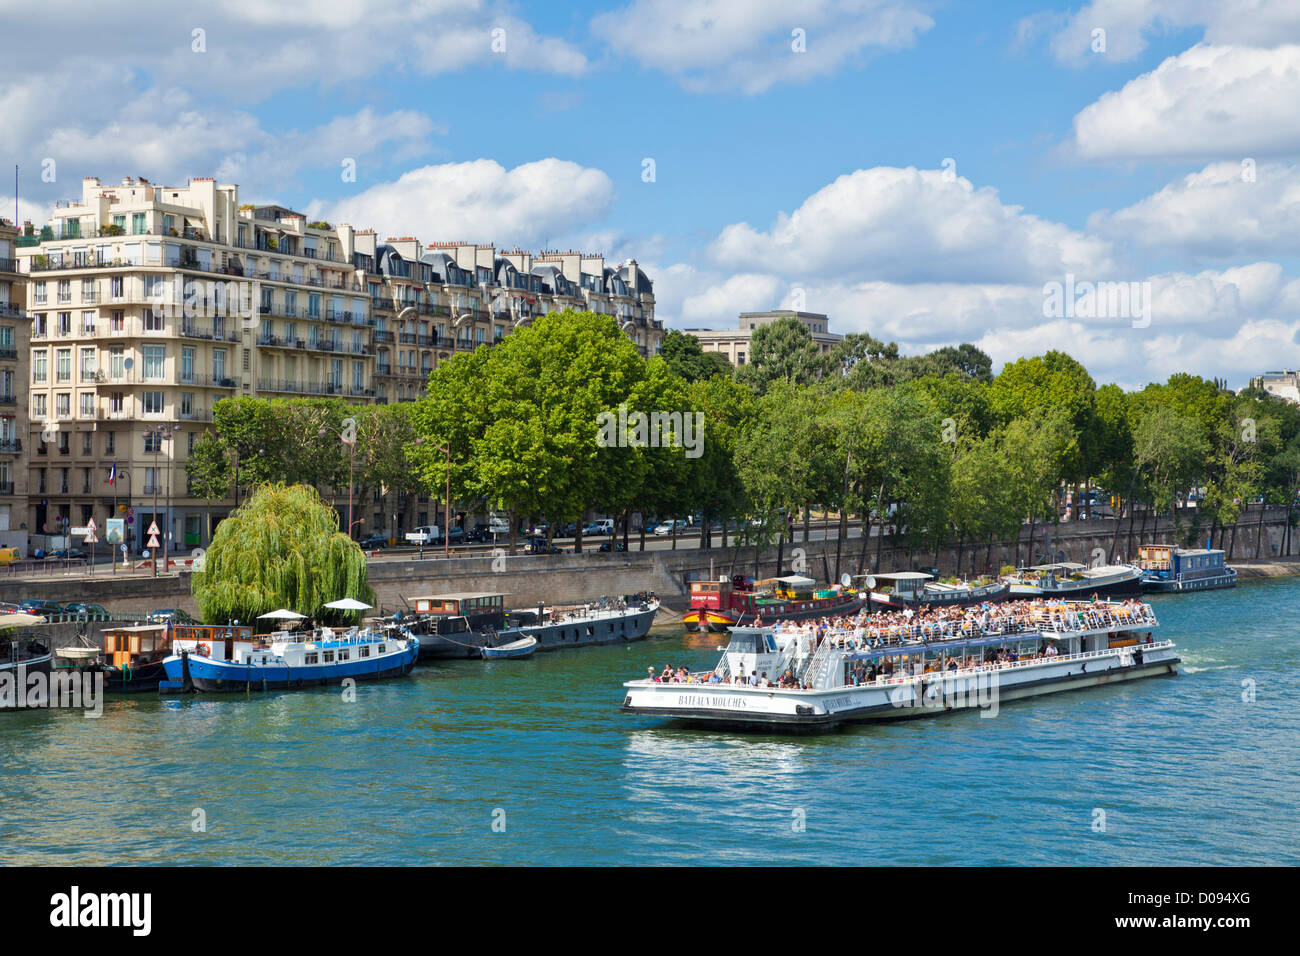 Un bateau d'Excursion bateaux mouches plein de touristes sur la Seine Paris France Europe de l'UE Banque D'Images